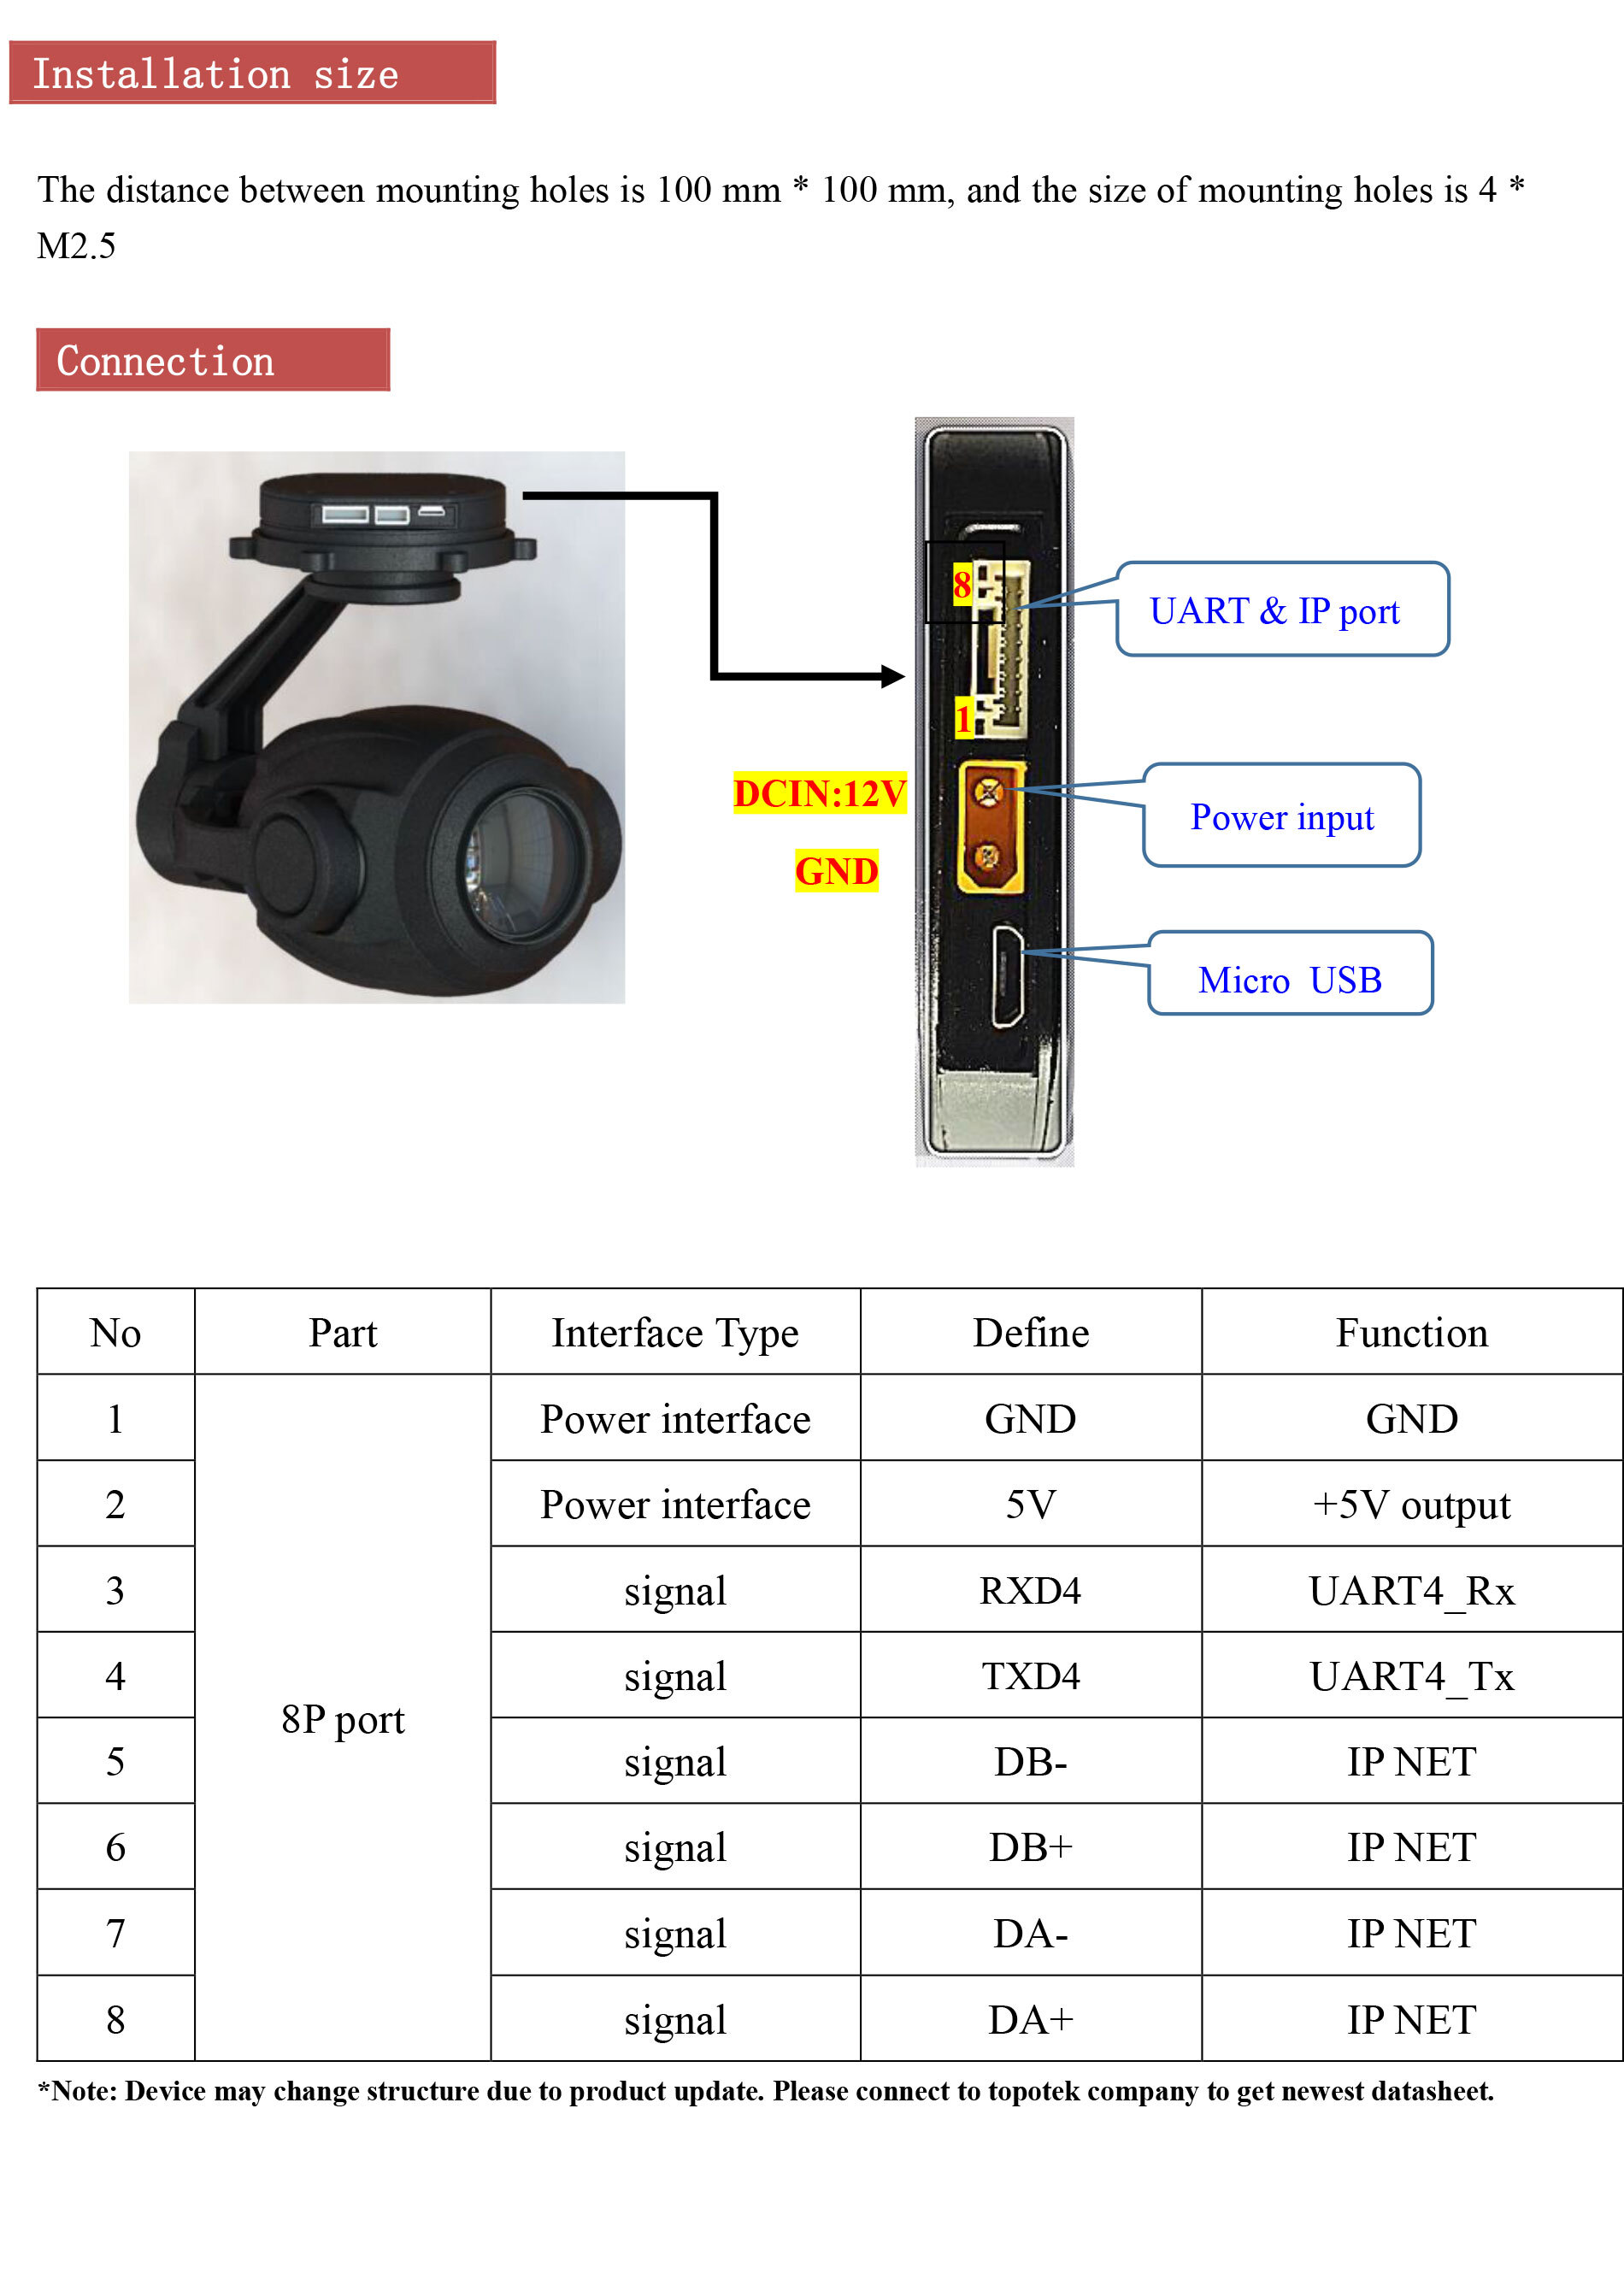 HI20S77  20x Optical Zoom Gimbal camera + 4K IP Network 3-Axis Gimbal camera